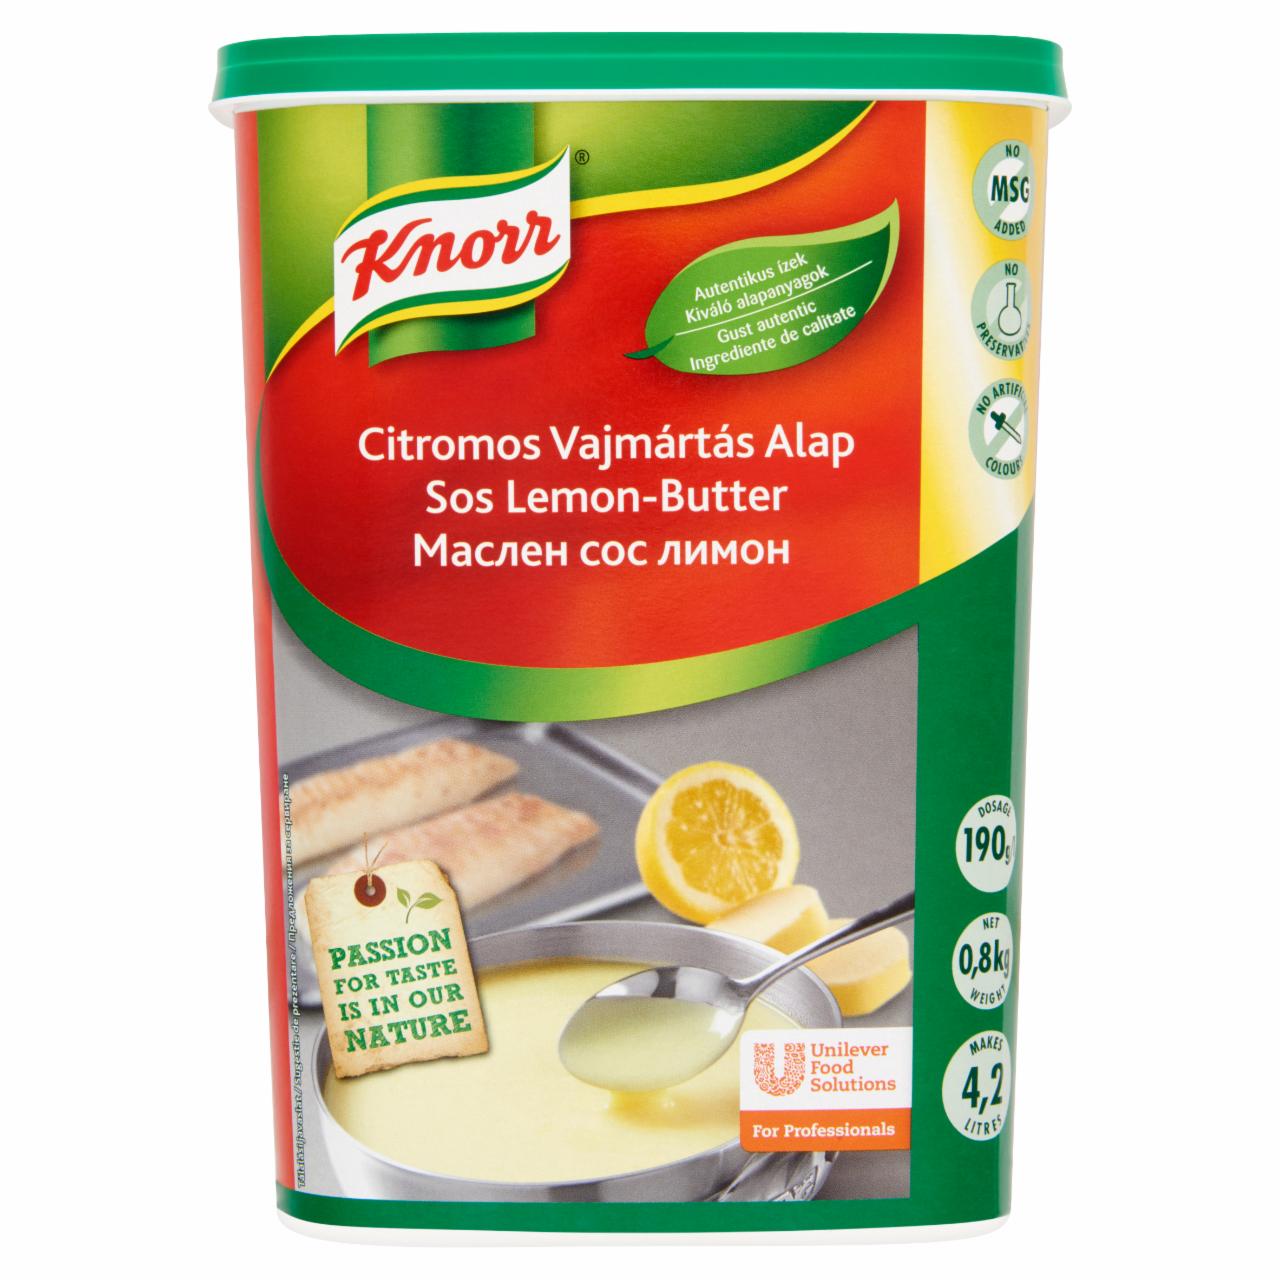 Képek - Knorr citromos vajmártás alap 0,8 kg